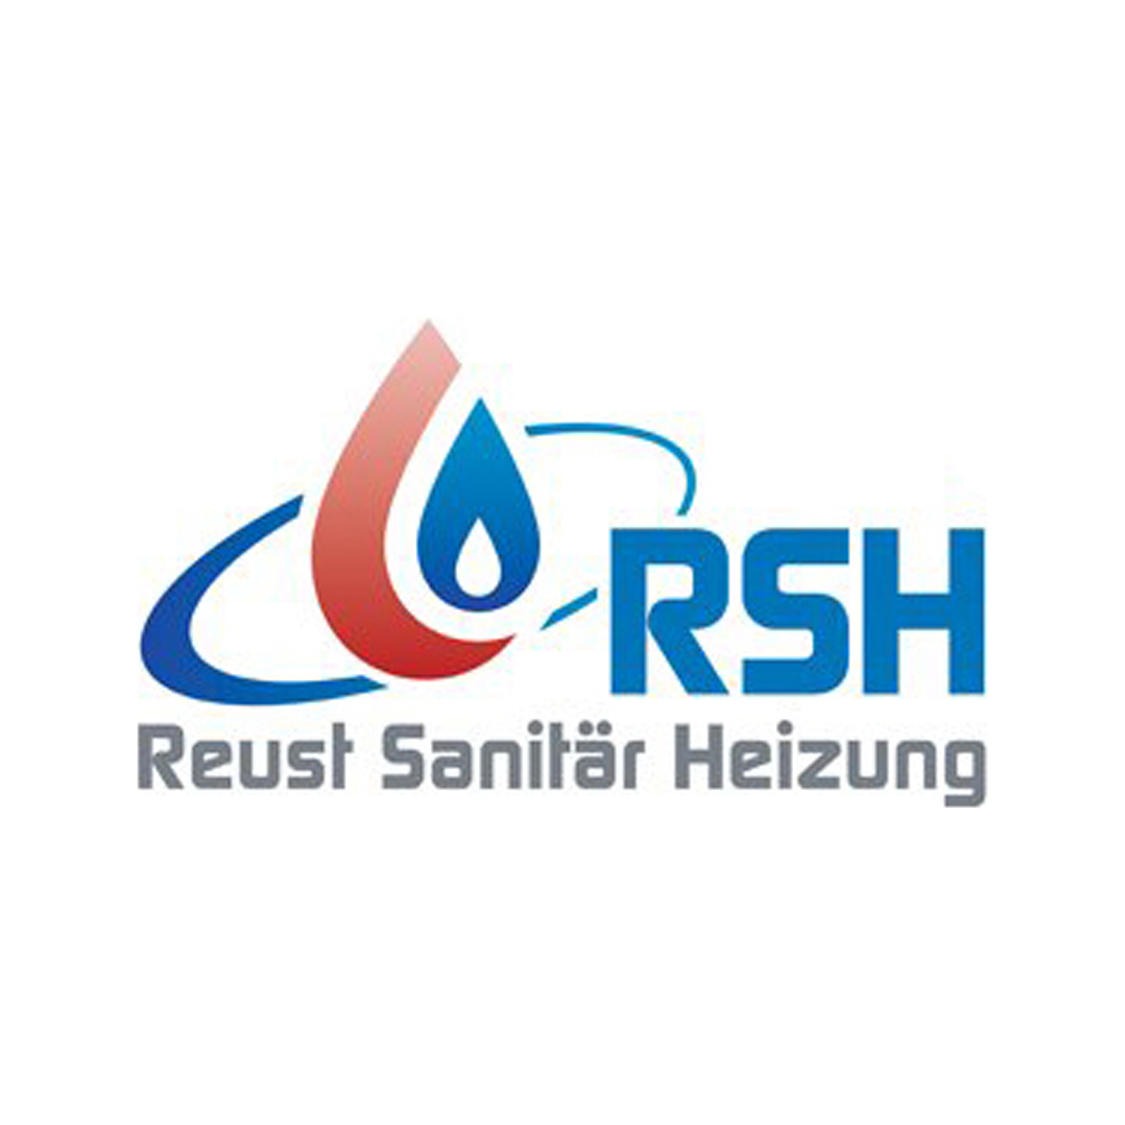 RSH Reust Sanitär Heizung Logo